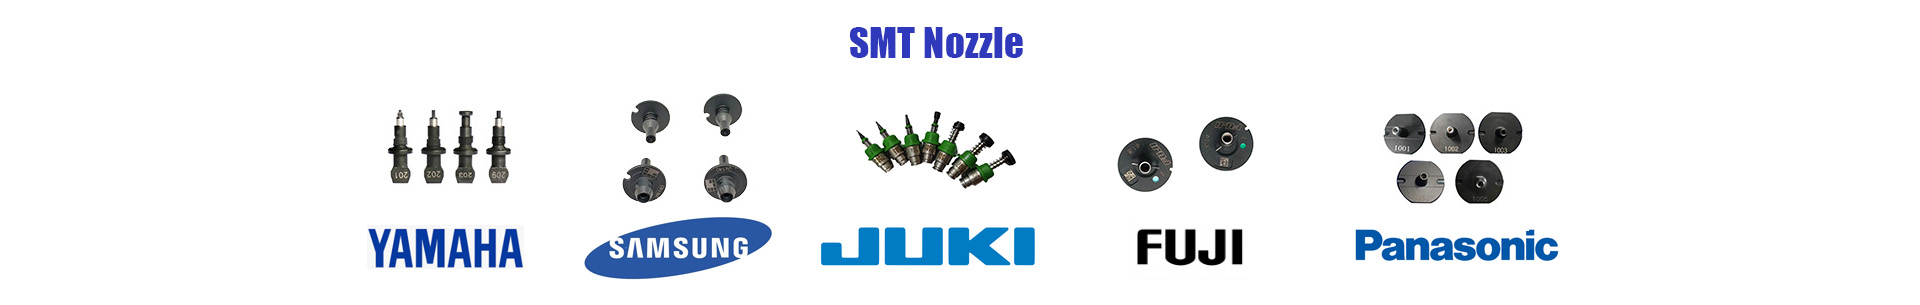 SMT Nozzle